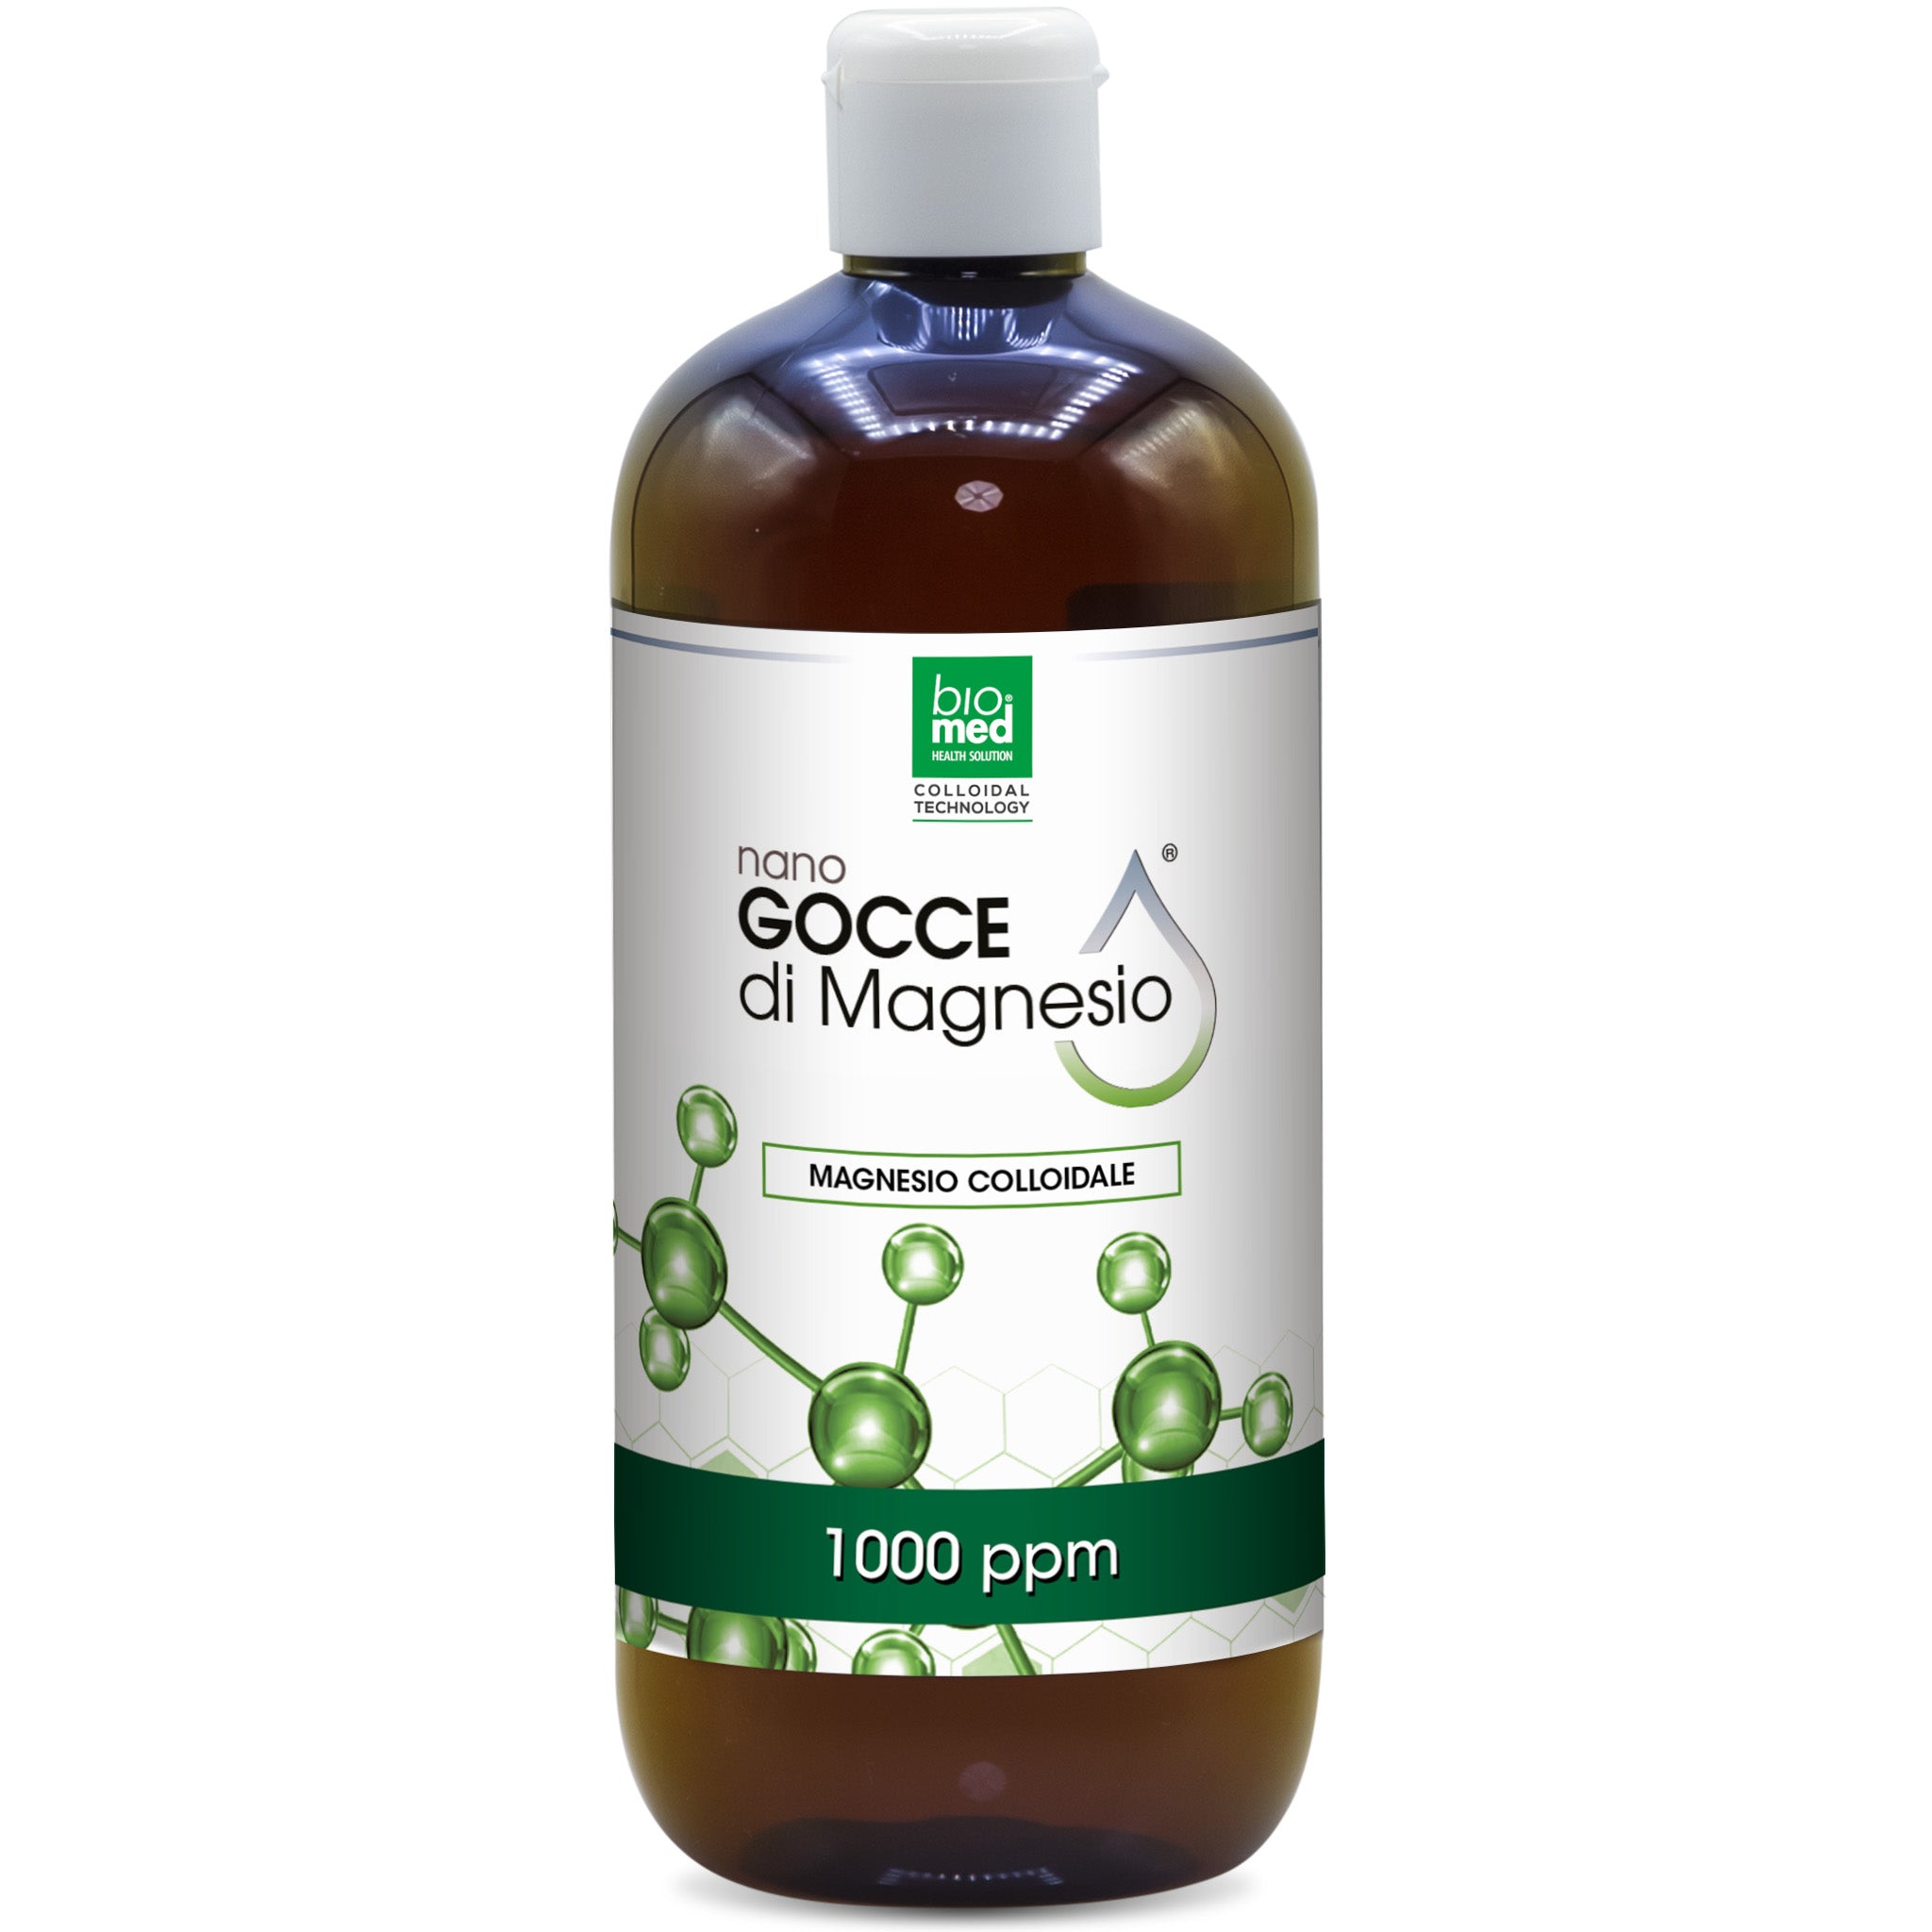 Magnesio colloidale Attivo biomed - Nano Gocce - 500ml - 1000ppm